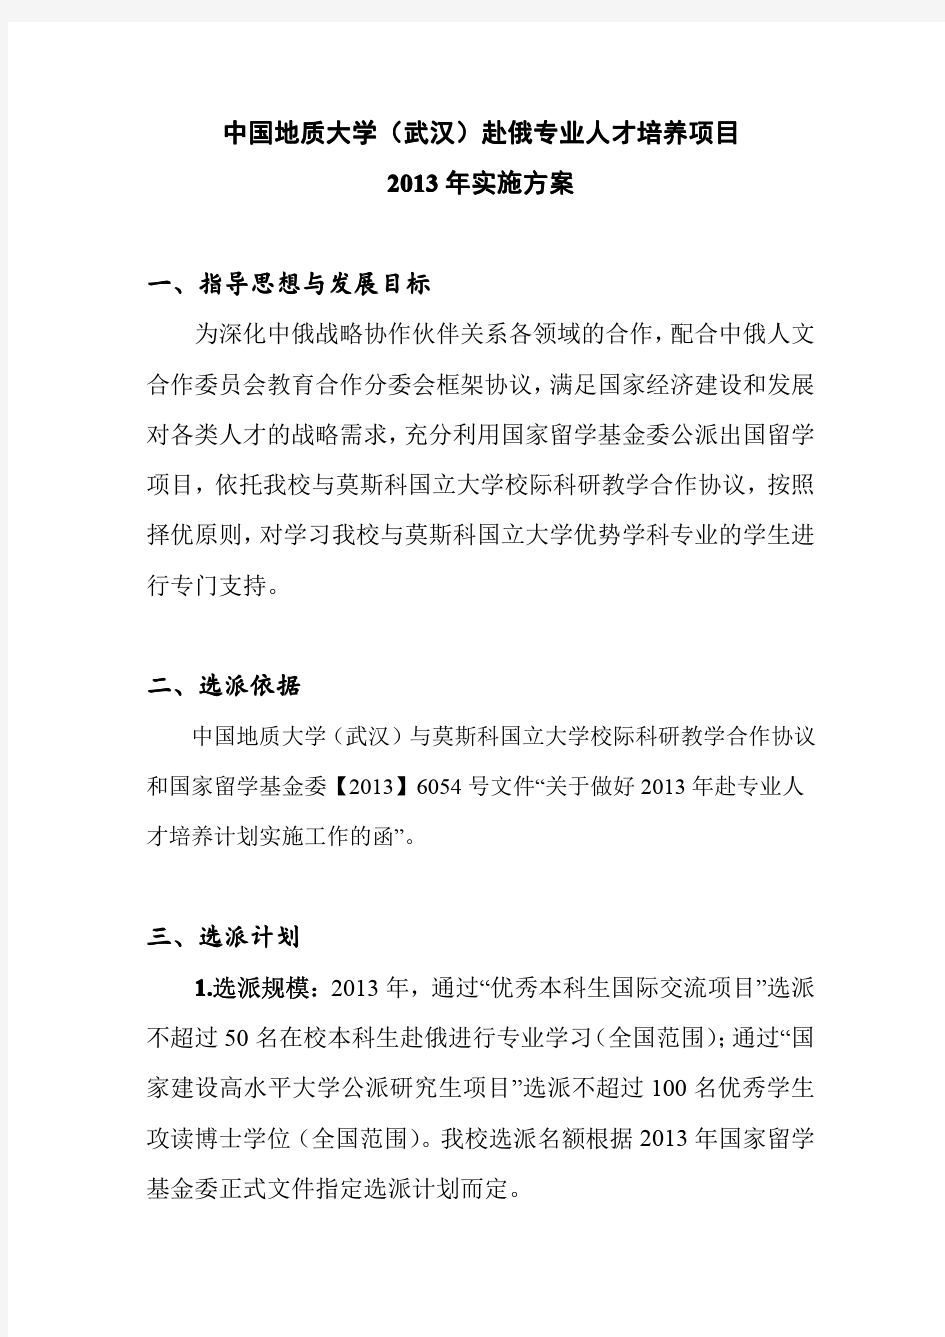 中国地质大学(武汉)赴俄专业人才培养项目2013年实施规划(草案)